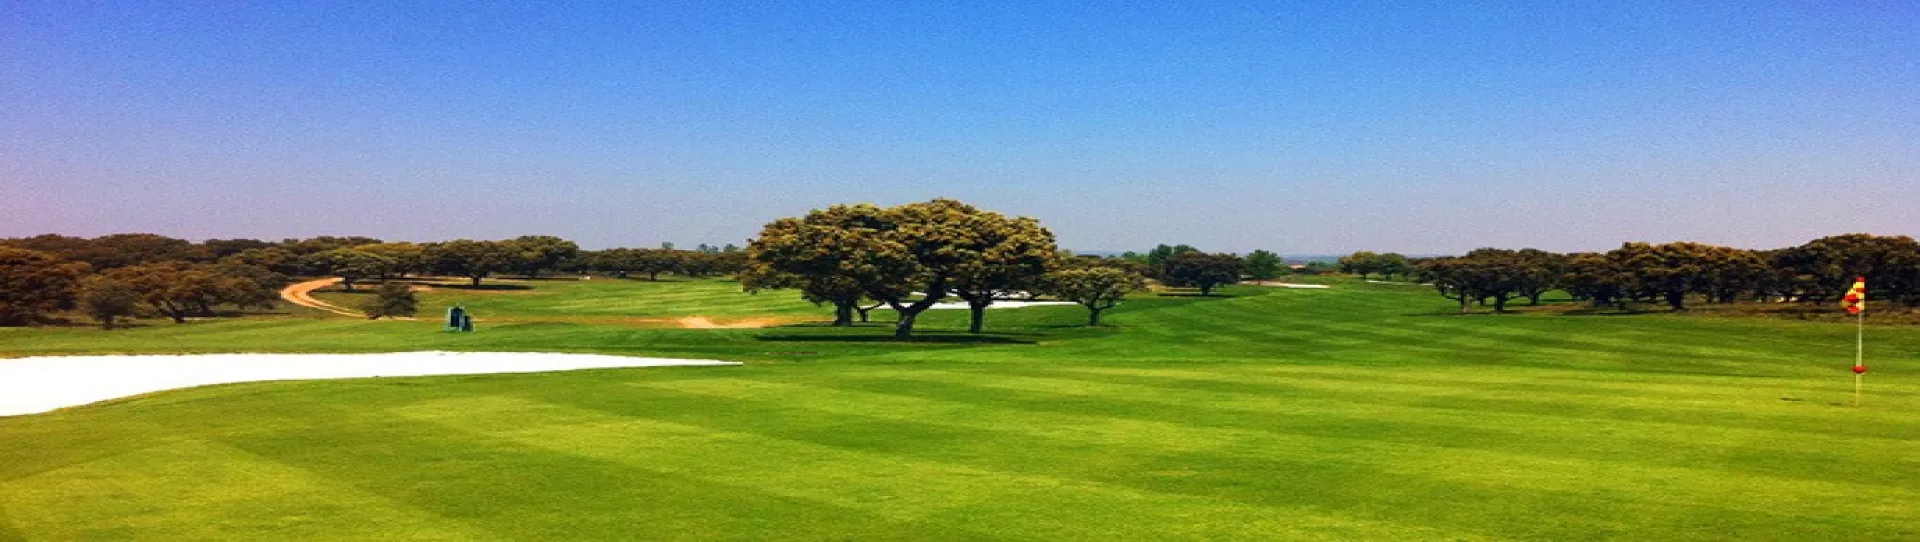 Spain golf courses - Villamayor Golf Course - Photo 3